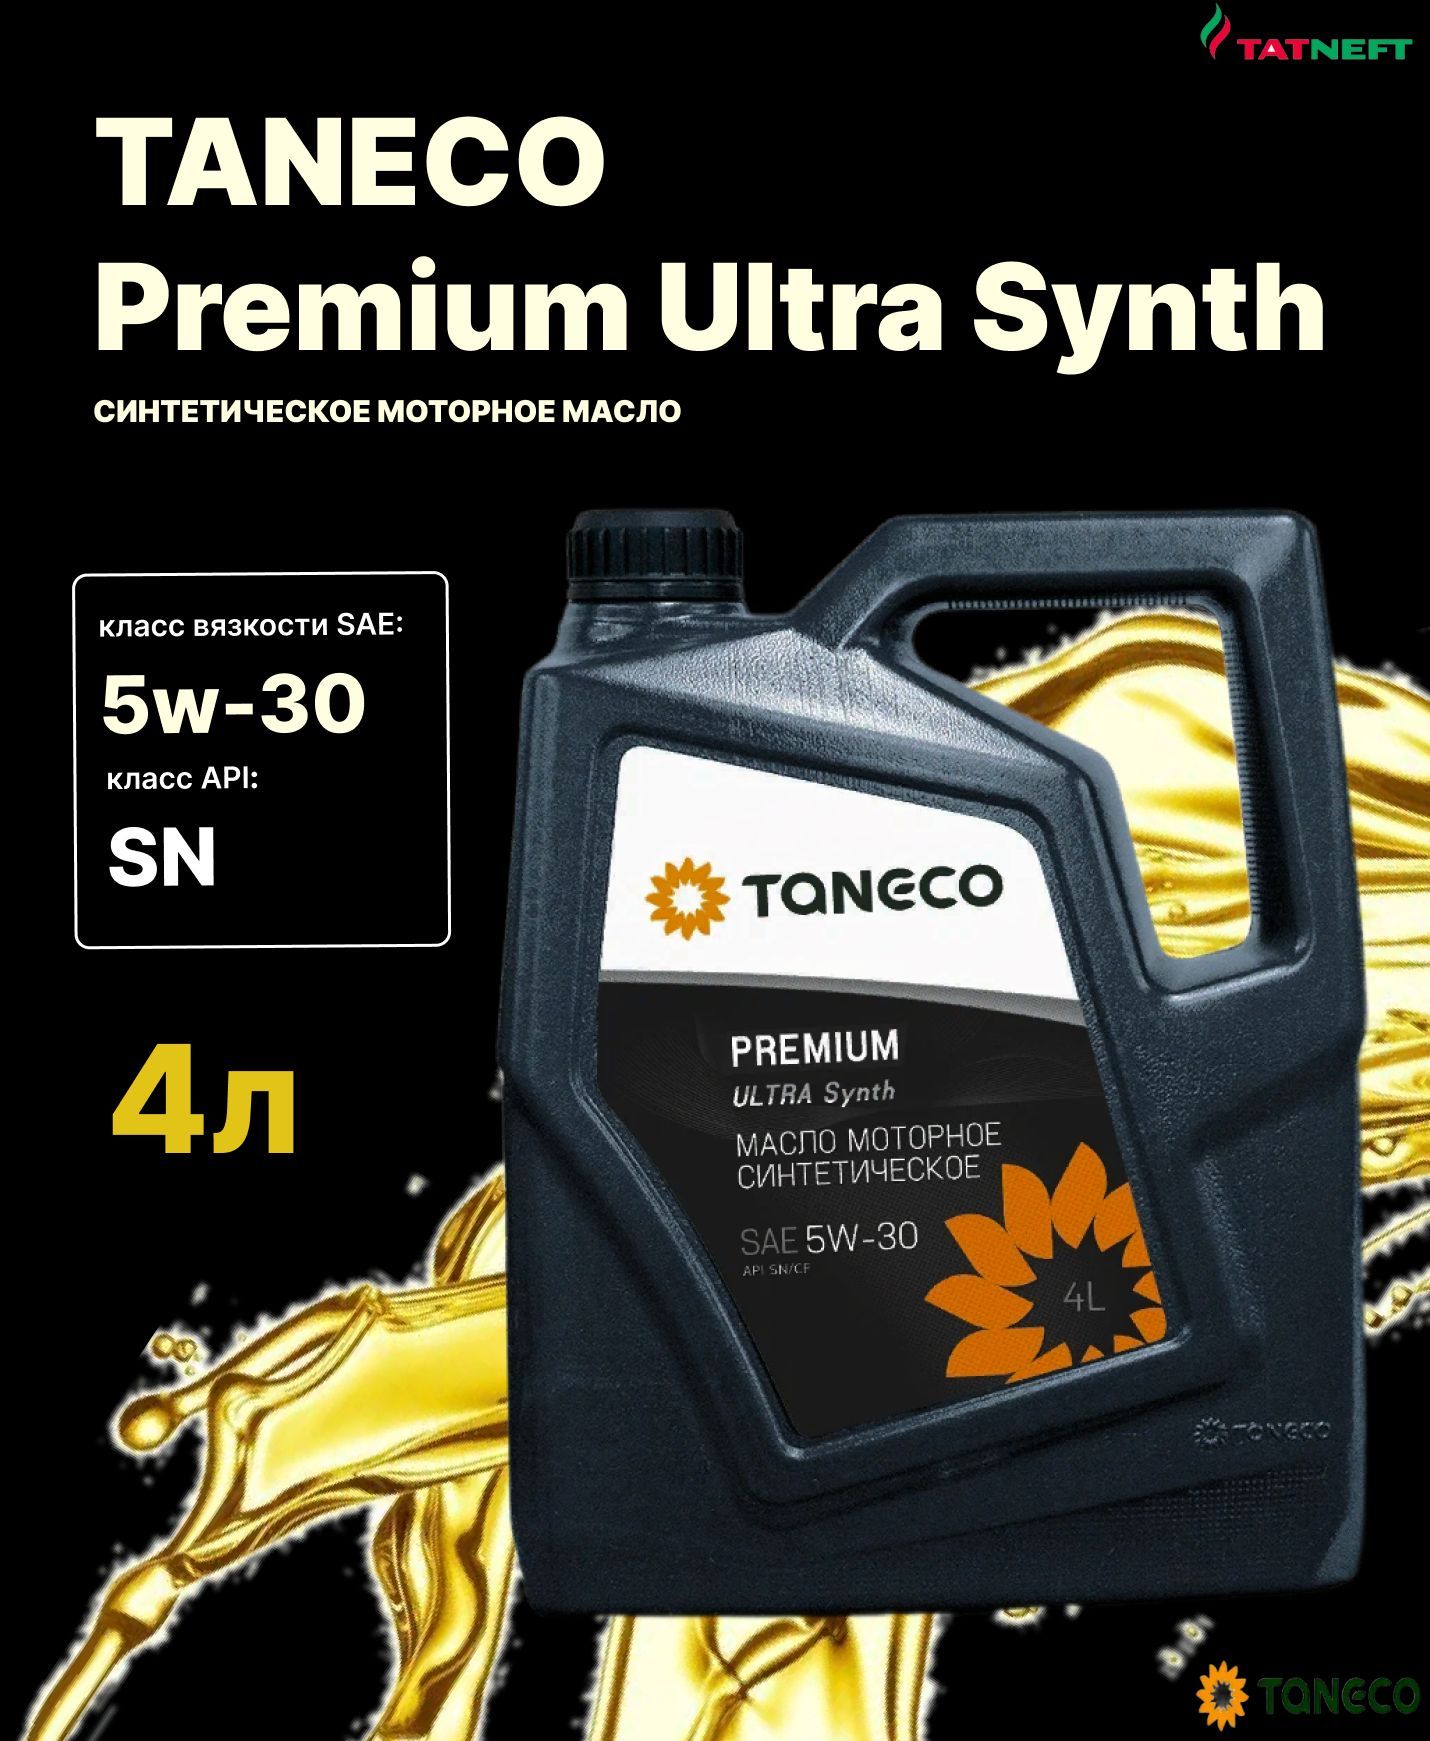 Taneco 5w30 Premium Ultra. ТАНЕКО премиум ультра синт 5w30. ТАНЕКО премиум ультра синт 5w30 отзывы. Масло моторное fam Ultra Sint 5w30. Масло taneco premium ultra synth